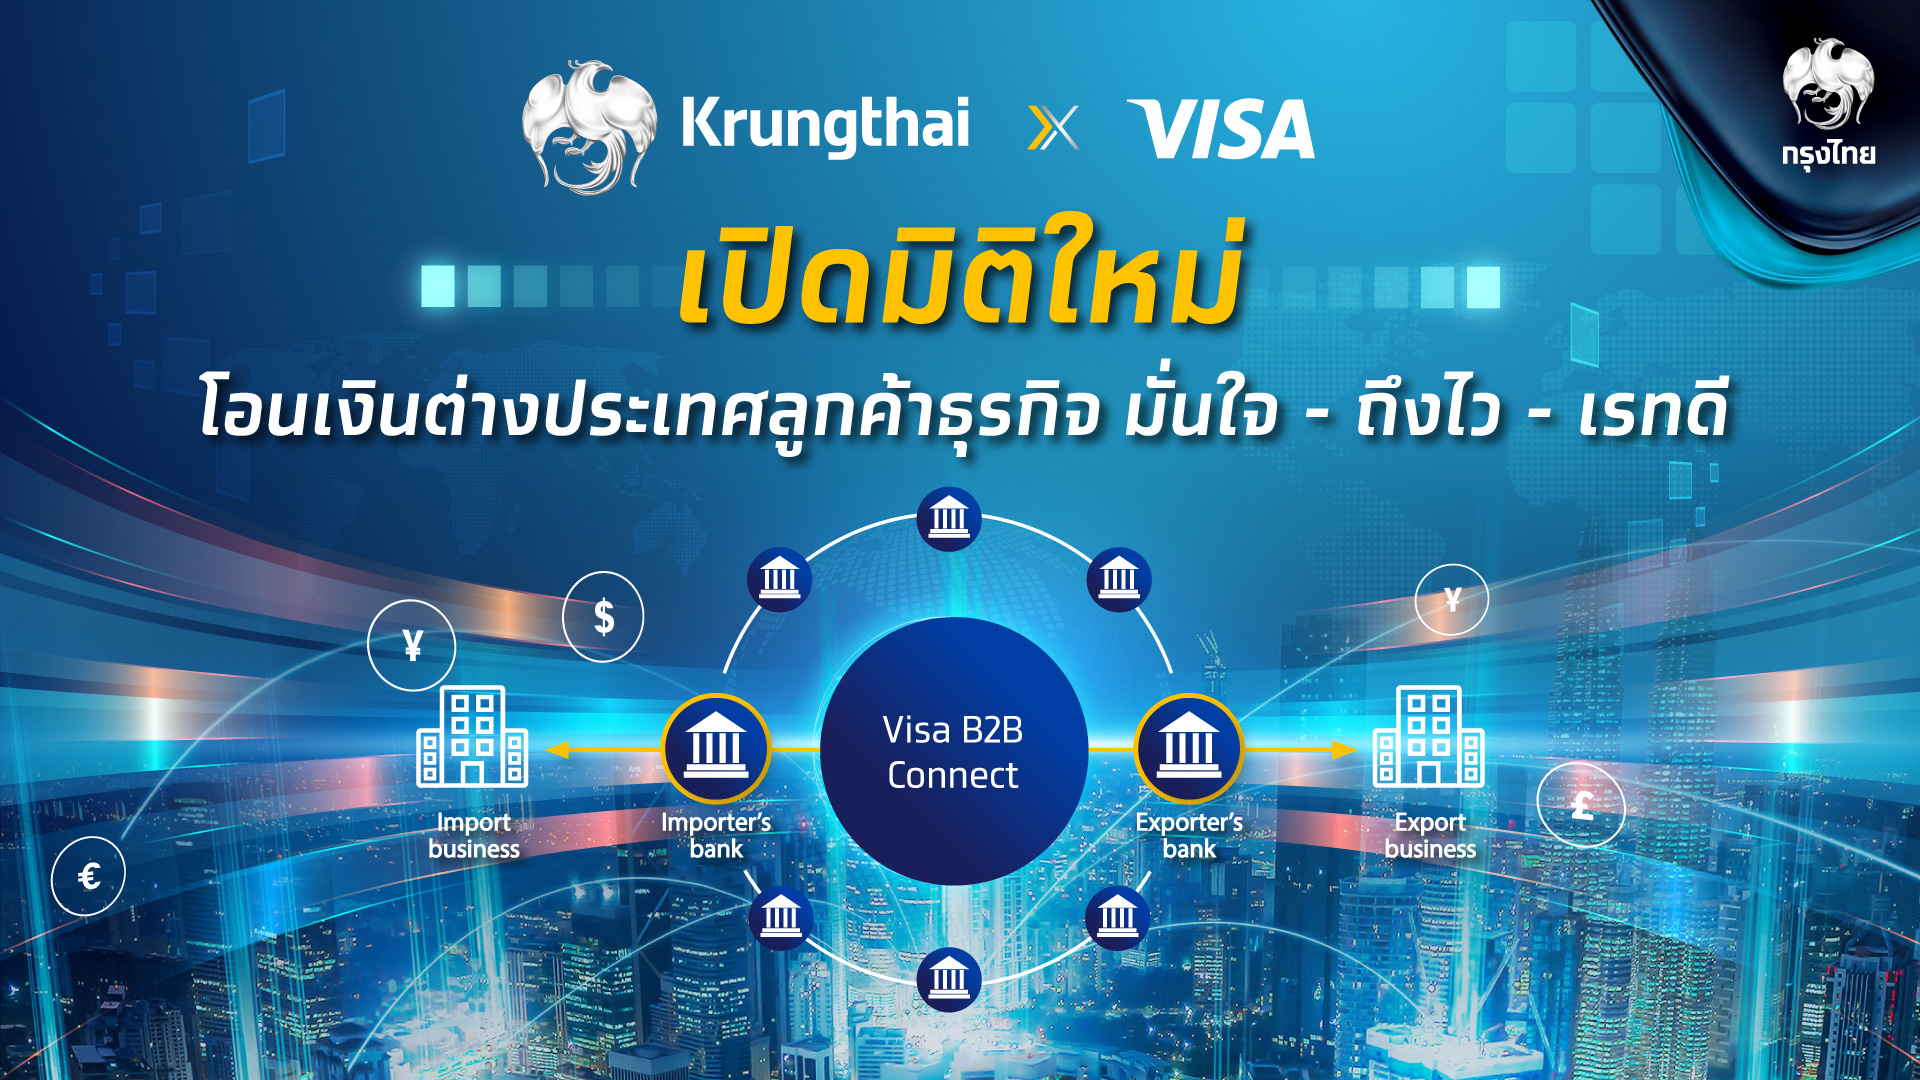 ครั้งแรกในไทย 'กรุงไทย' จับมือ 'วีซ่า' เปิดมิติใหม่  บริการโอนเงินต่างประเทศลูกค้าธุรกิจ